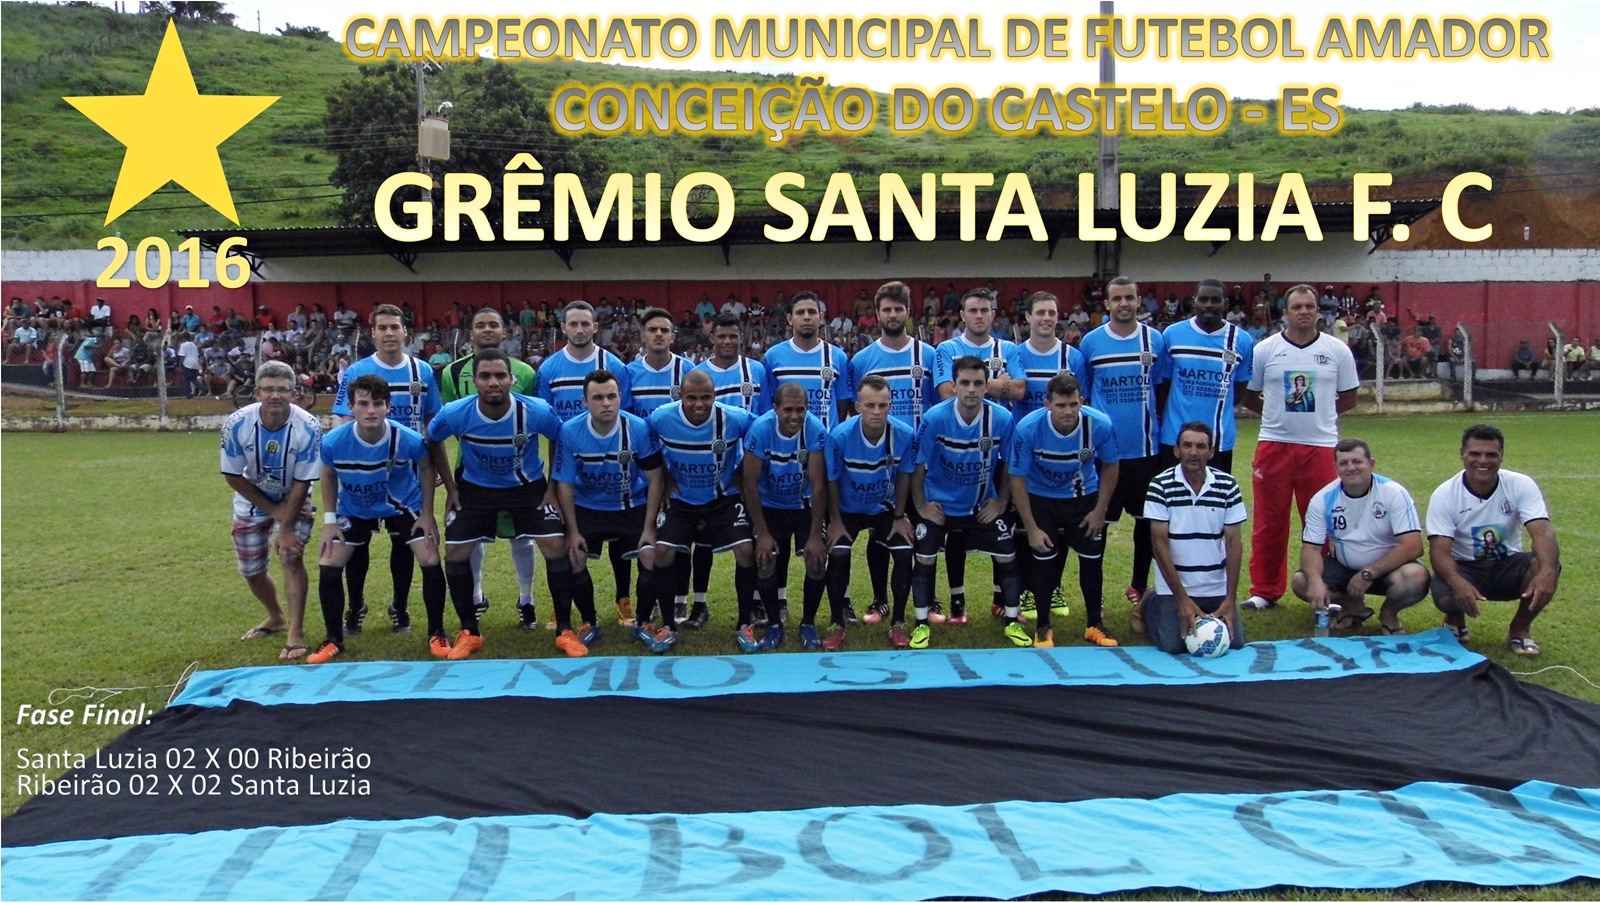 Grêmio de Santa Luzia conquista o municipal de futebol 2016 em Conceição do Castelo